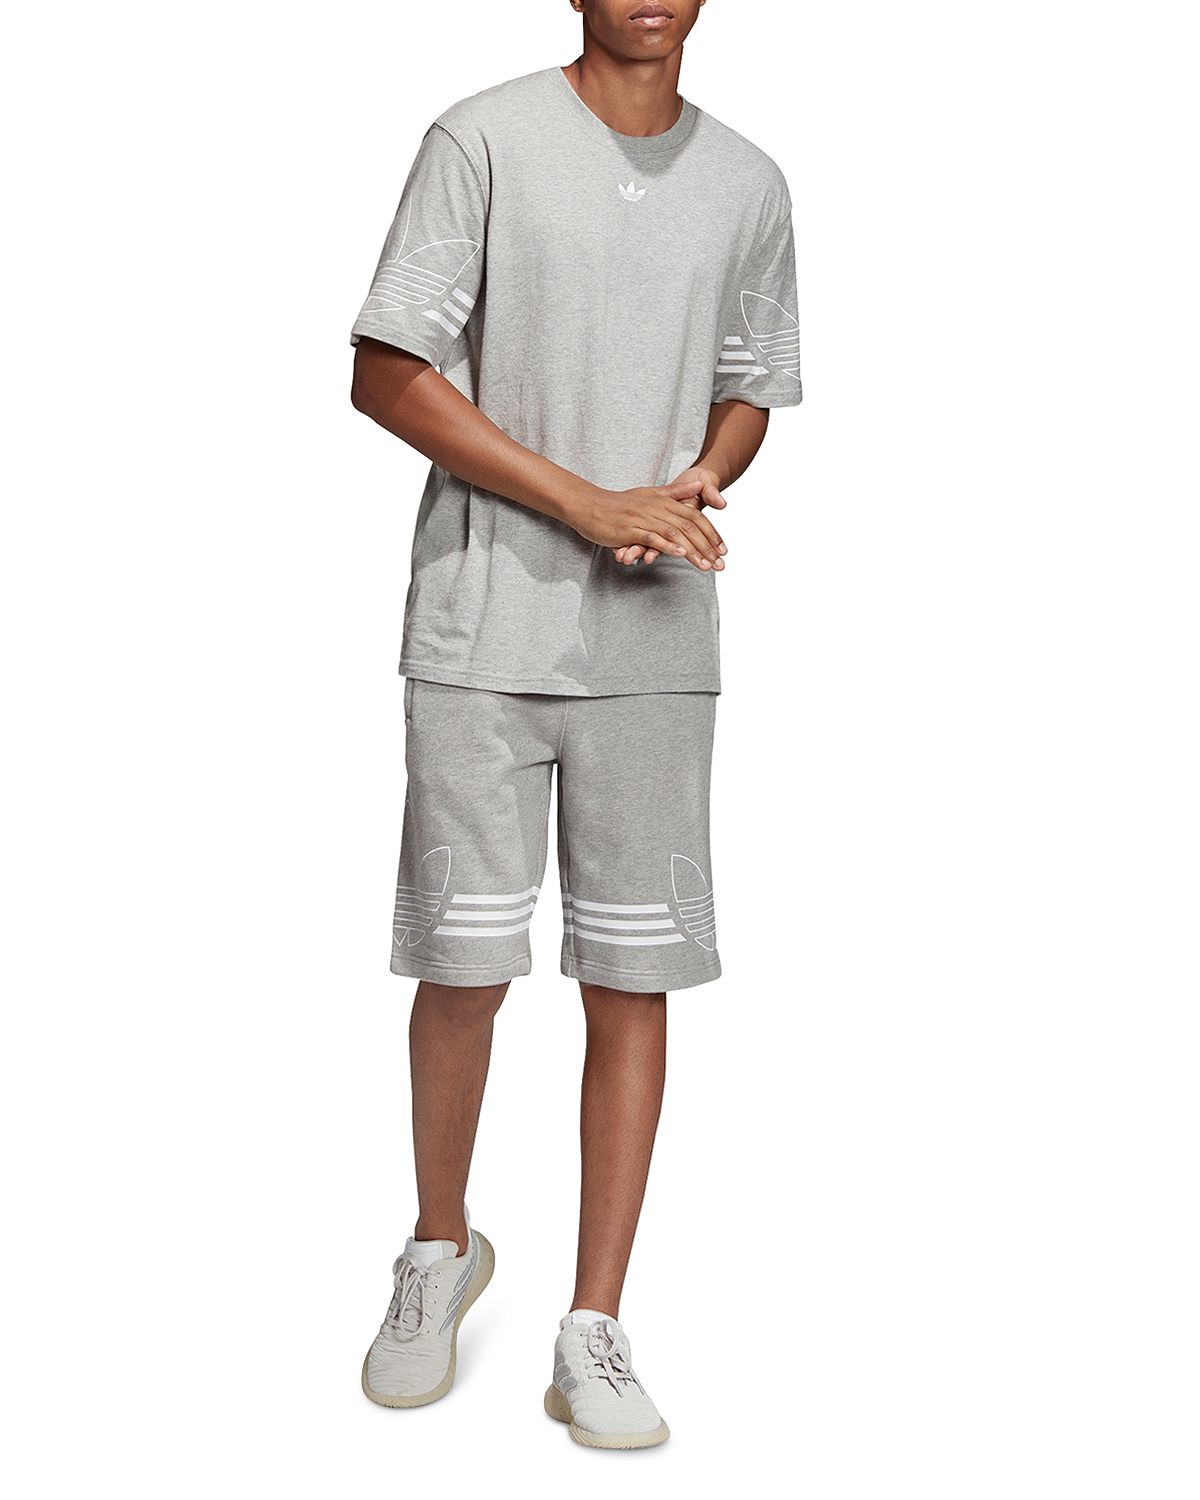 Adidas Originals Outline Logo Shorts Gray